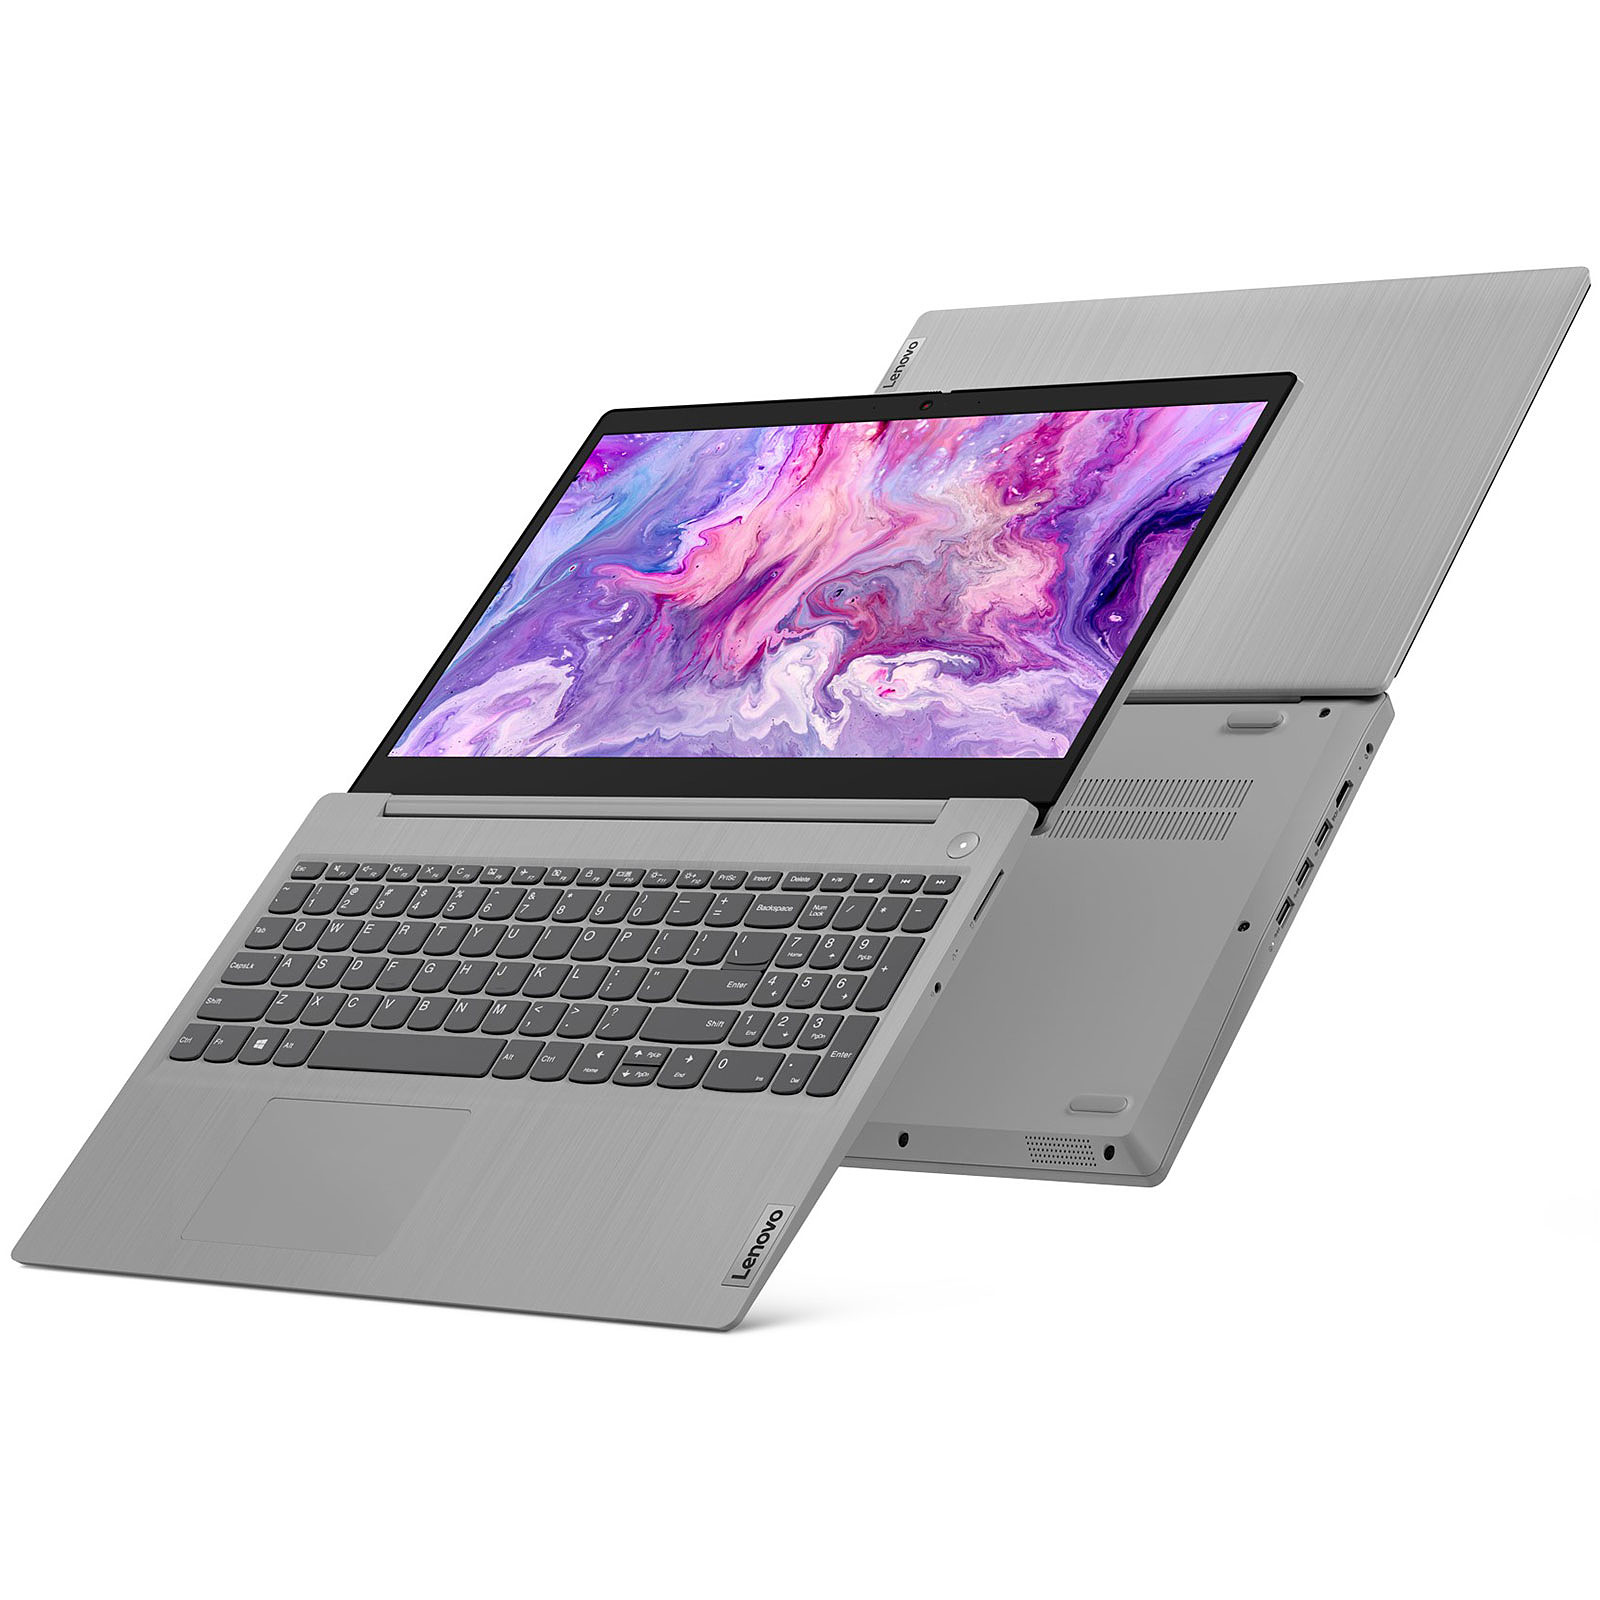 لپ تاپ 15.6 اینچی لنوو مدل Lenovo IdeaPad 3 15IGL05  thumb 1 6